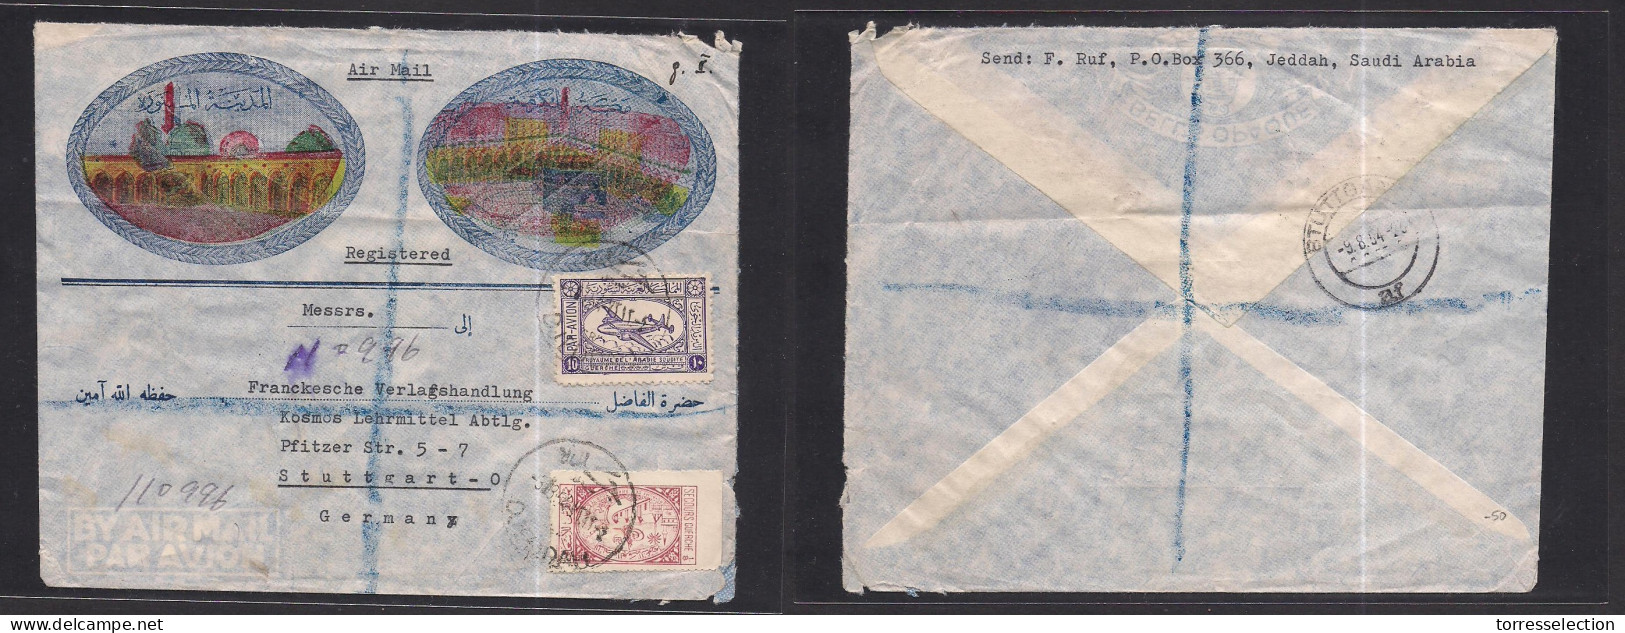 SAUDI ARABIA. 1954 (3 Aug) Djeddah - Germany, Stuttgaart (9 Aug) Mosque Color Illustrated Env. Registered Multifkd Env.  - Saudi Arabia